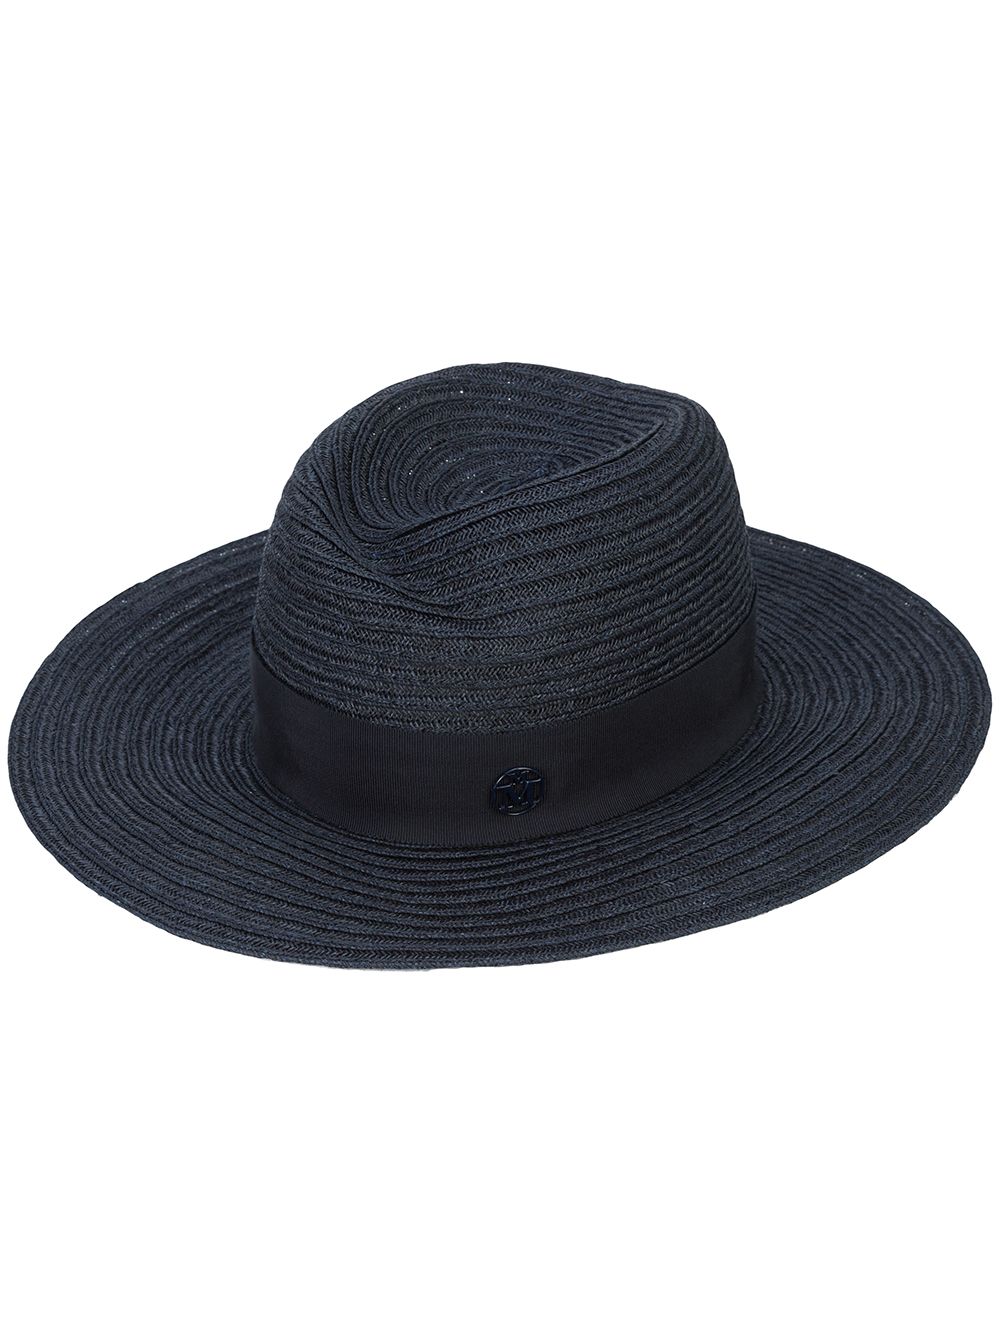 Maison Michel Virginie straw Fedora hat - Blue von Maison Michel